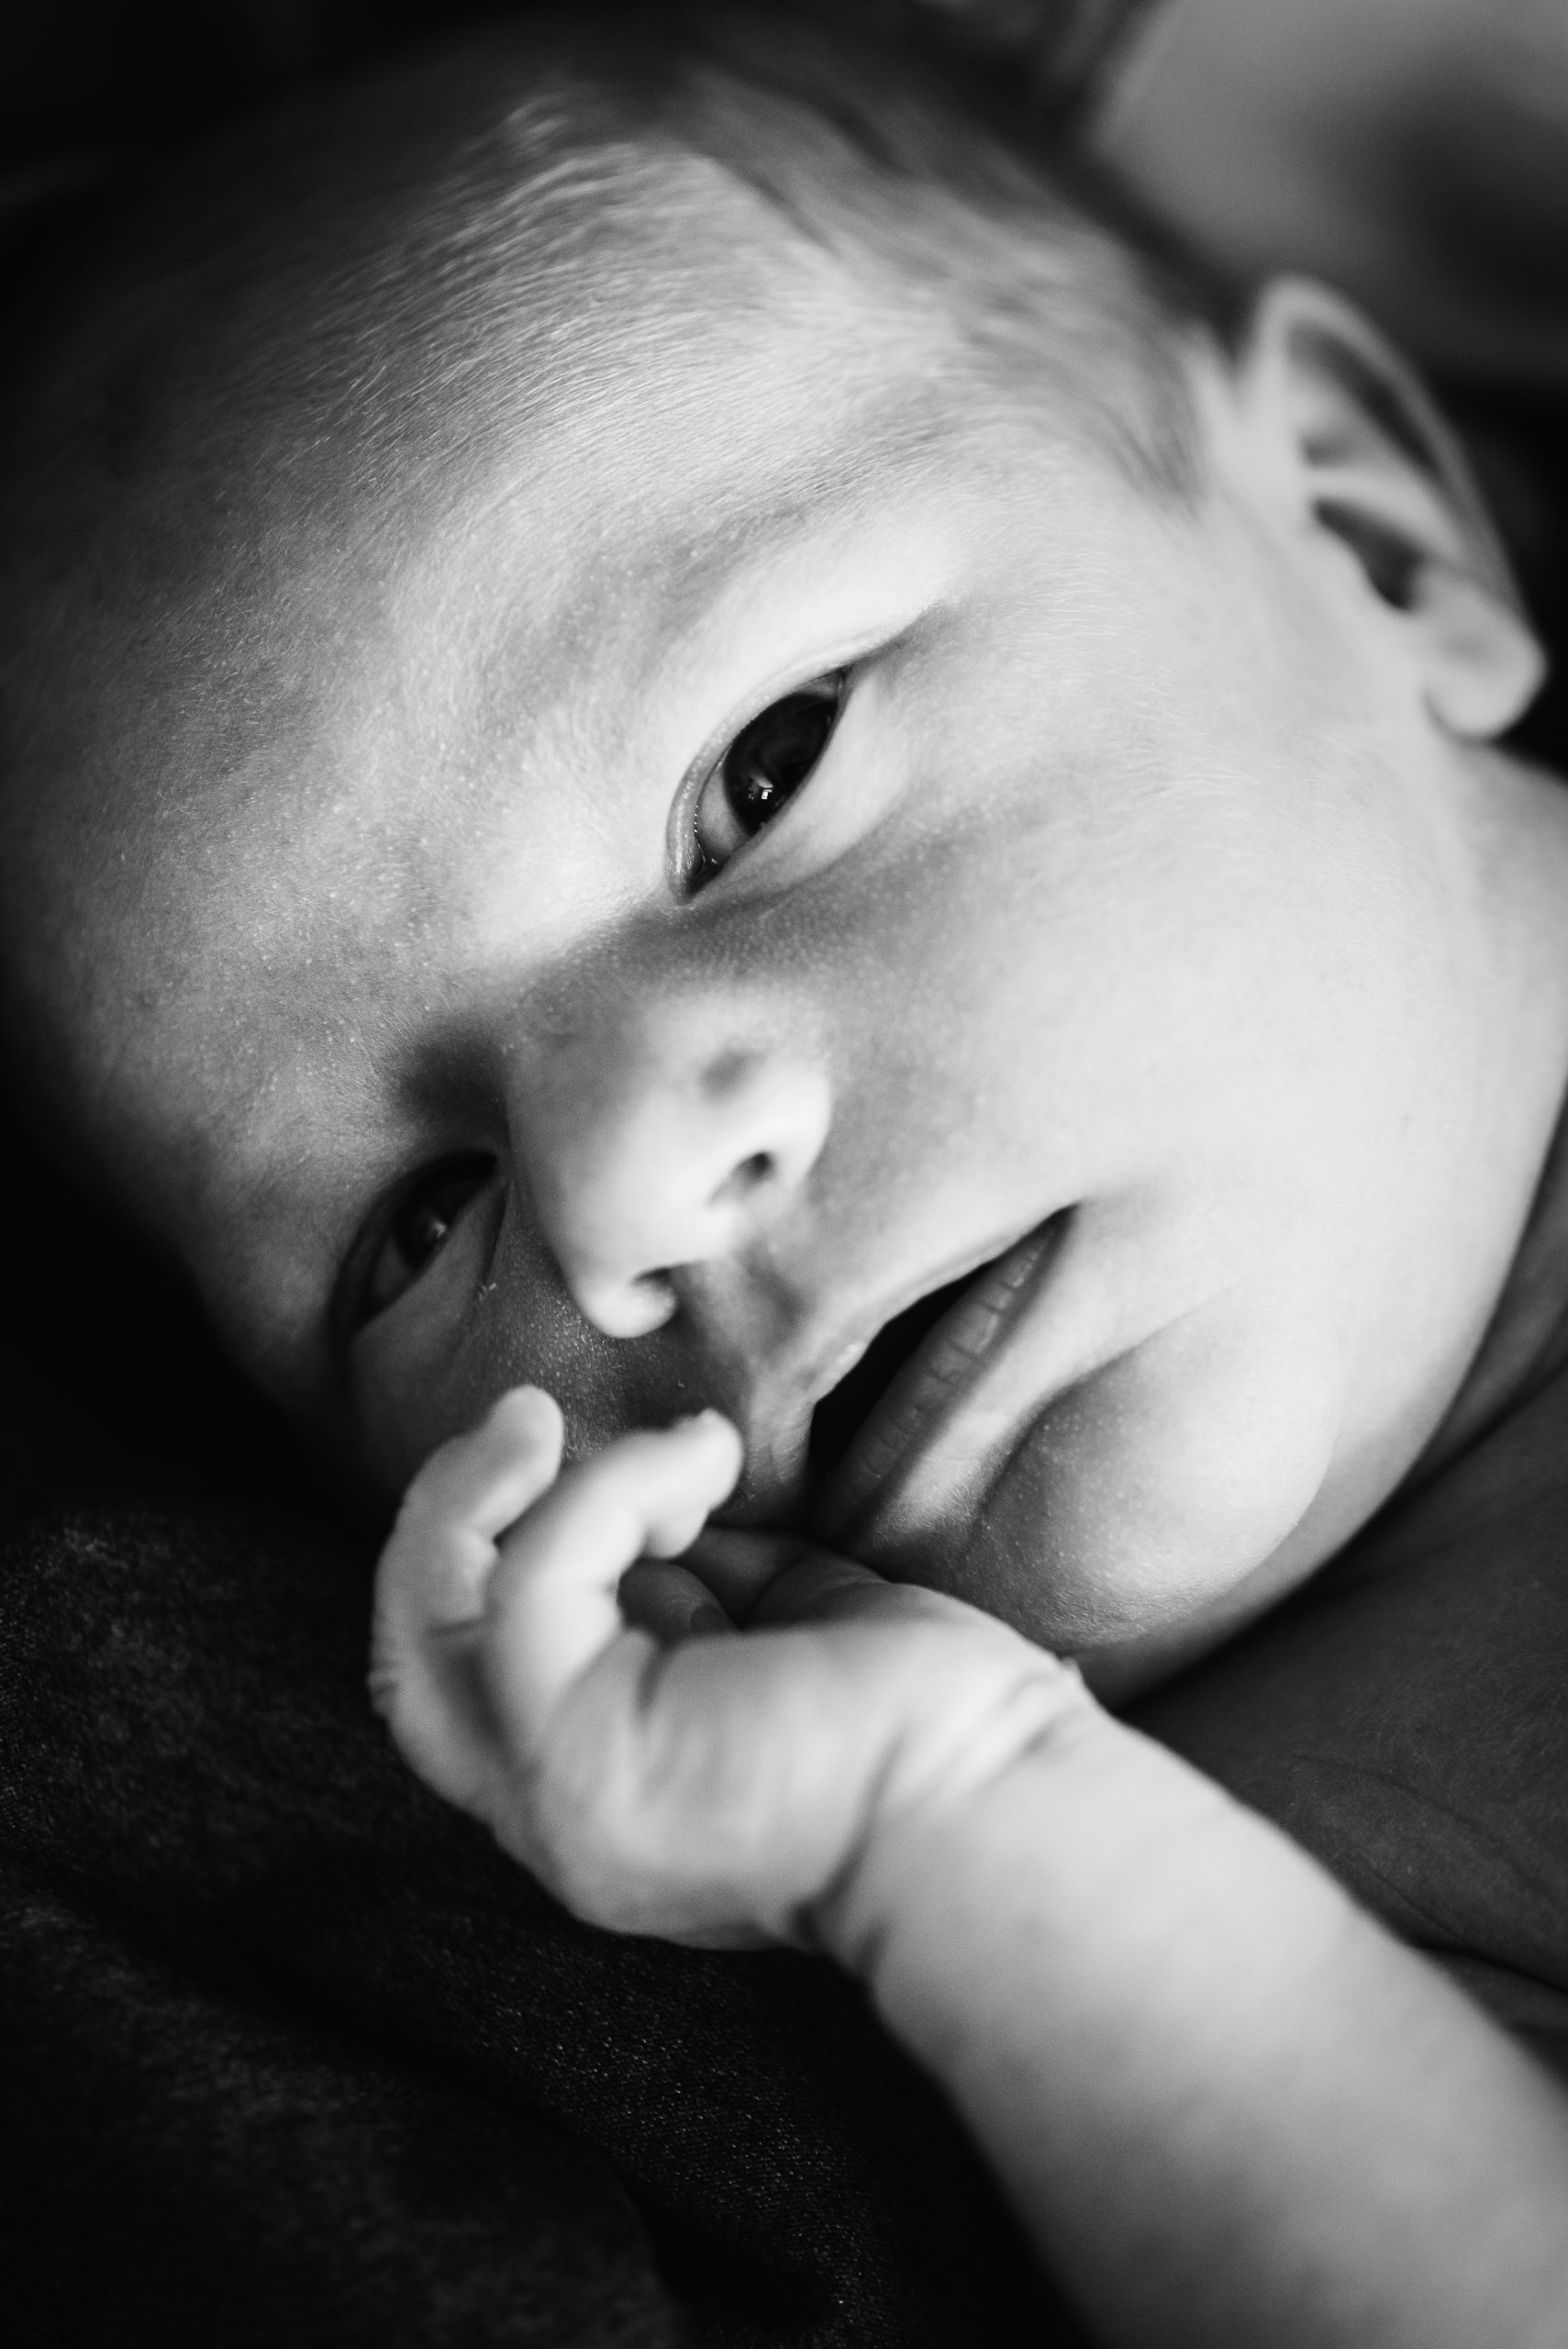 Baby fotografie, Mooi kindje, pasgeboren kindje, newbornshoot, Fotograaf Assen, familiefotograaf Assen, zwart/wit fotografie, gezinsfotograaf Assen